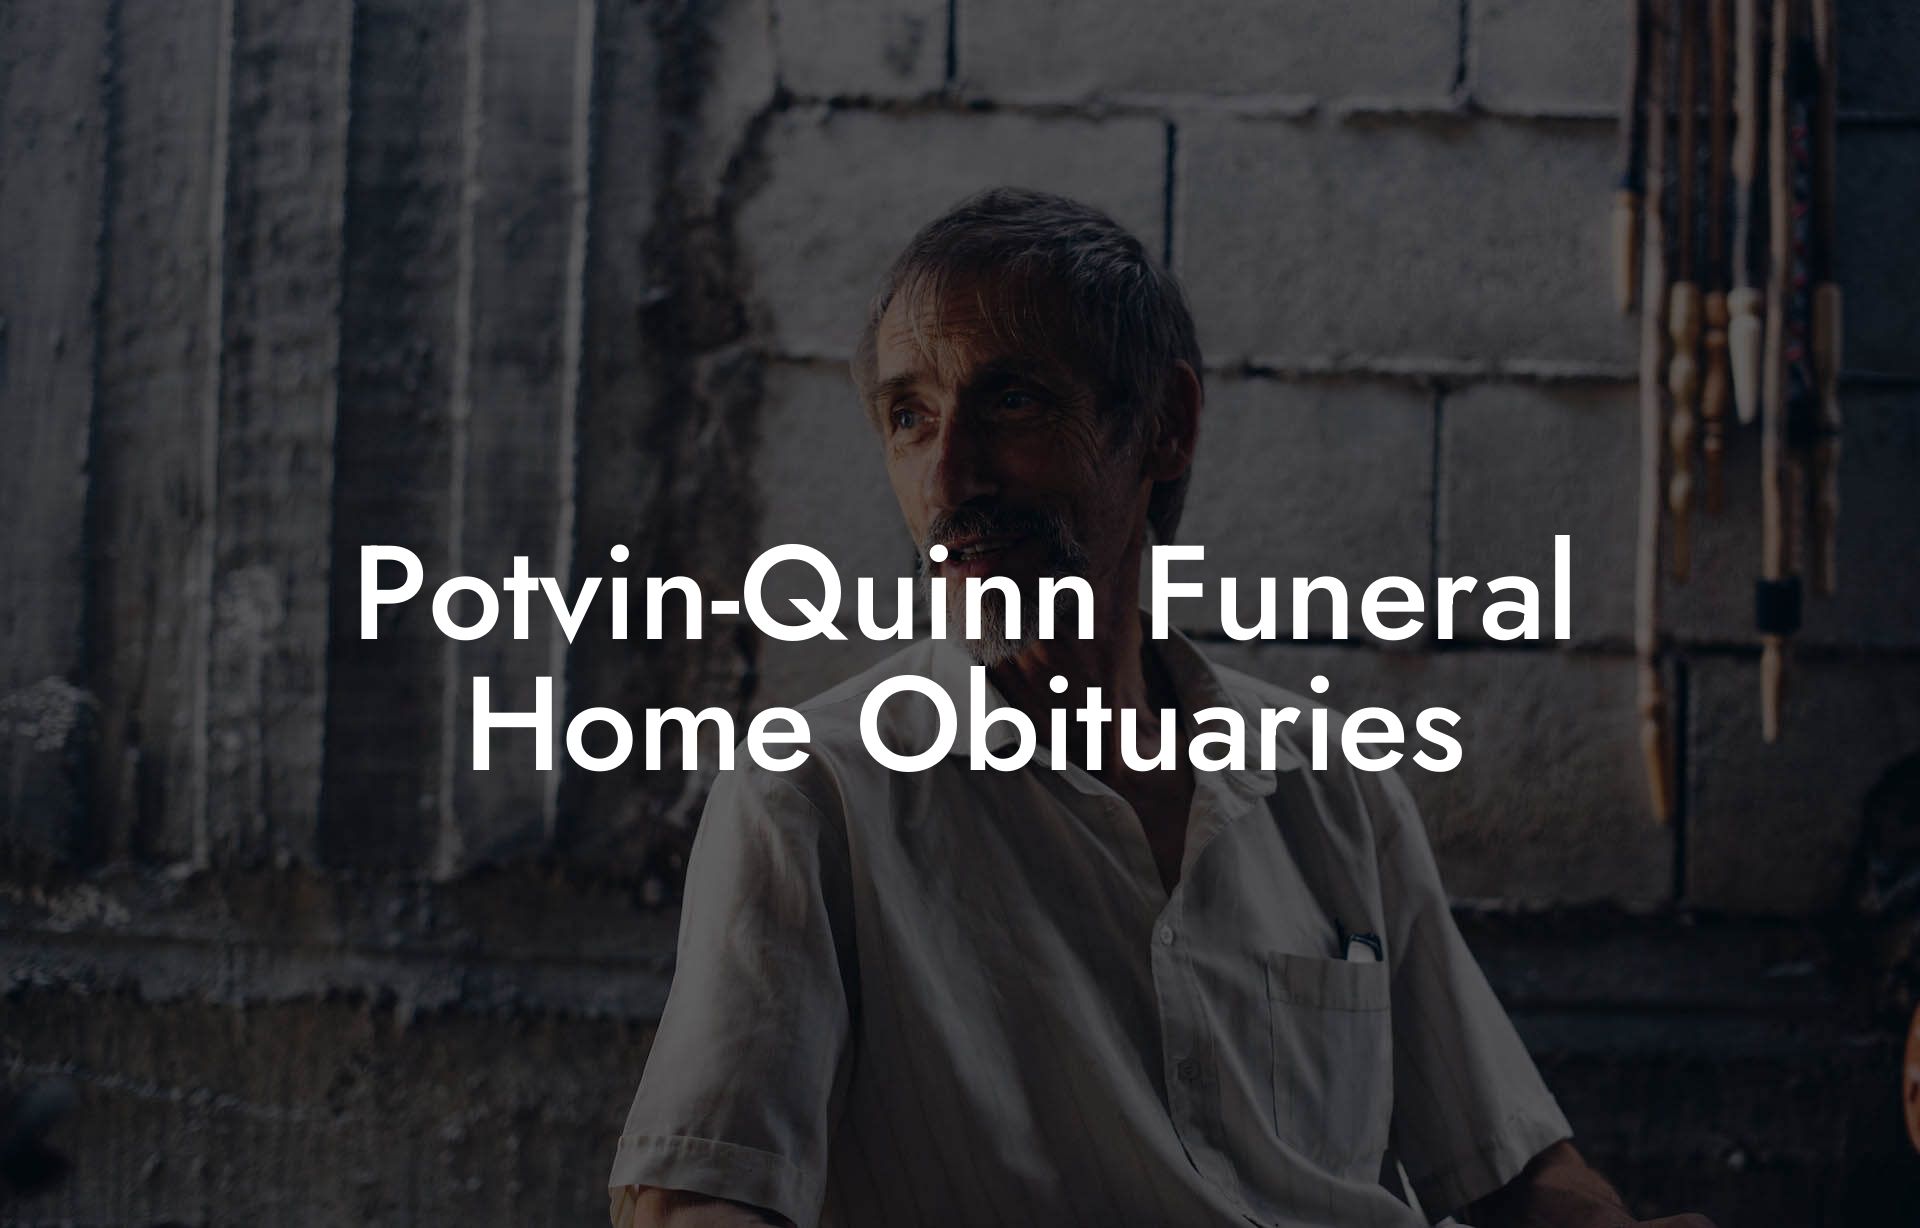 Potvin-Quinn Funeral Home Obituaries